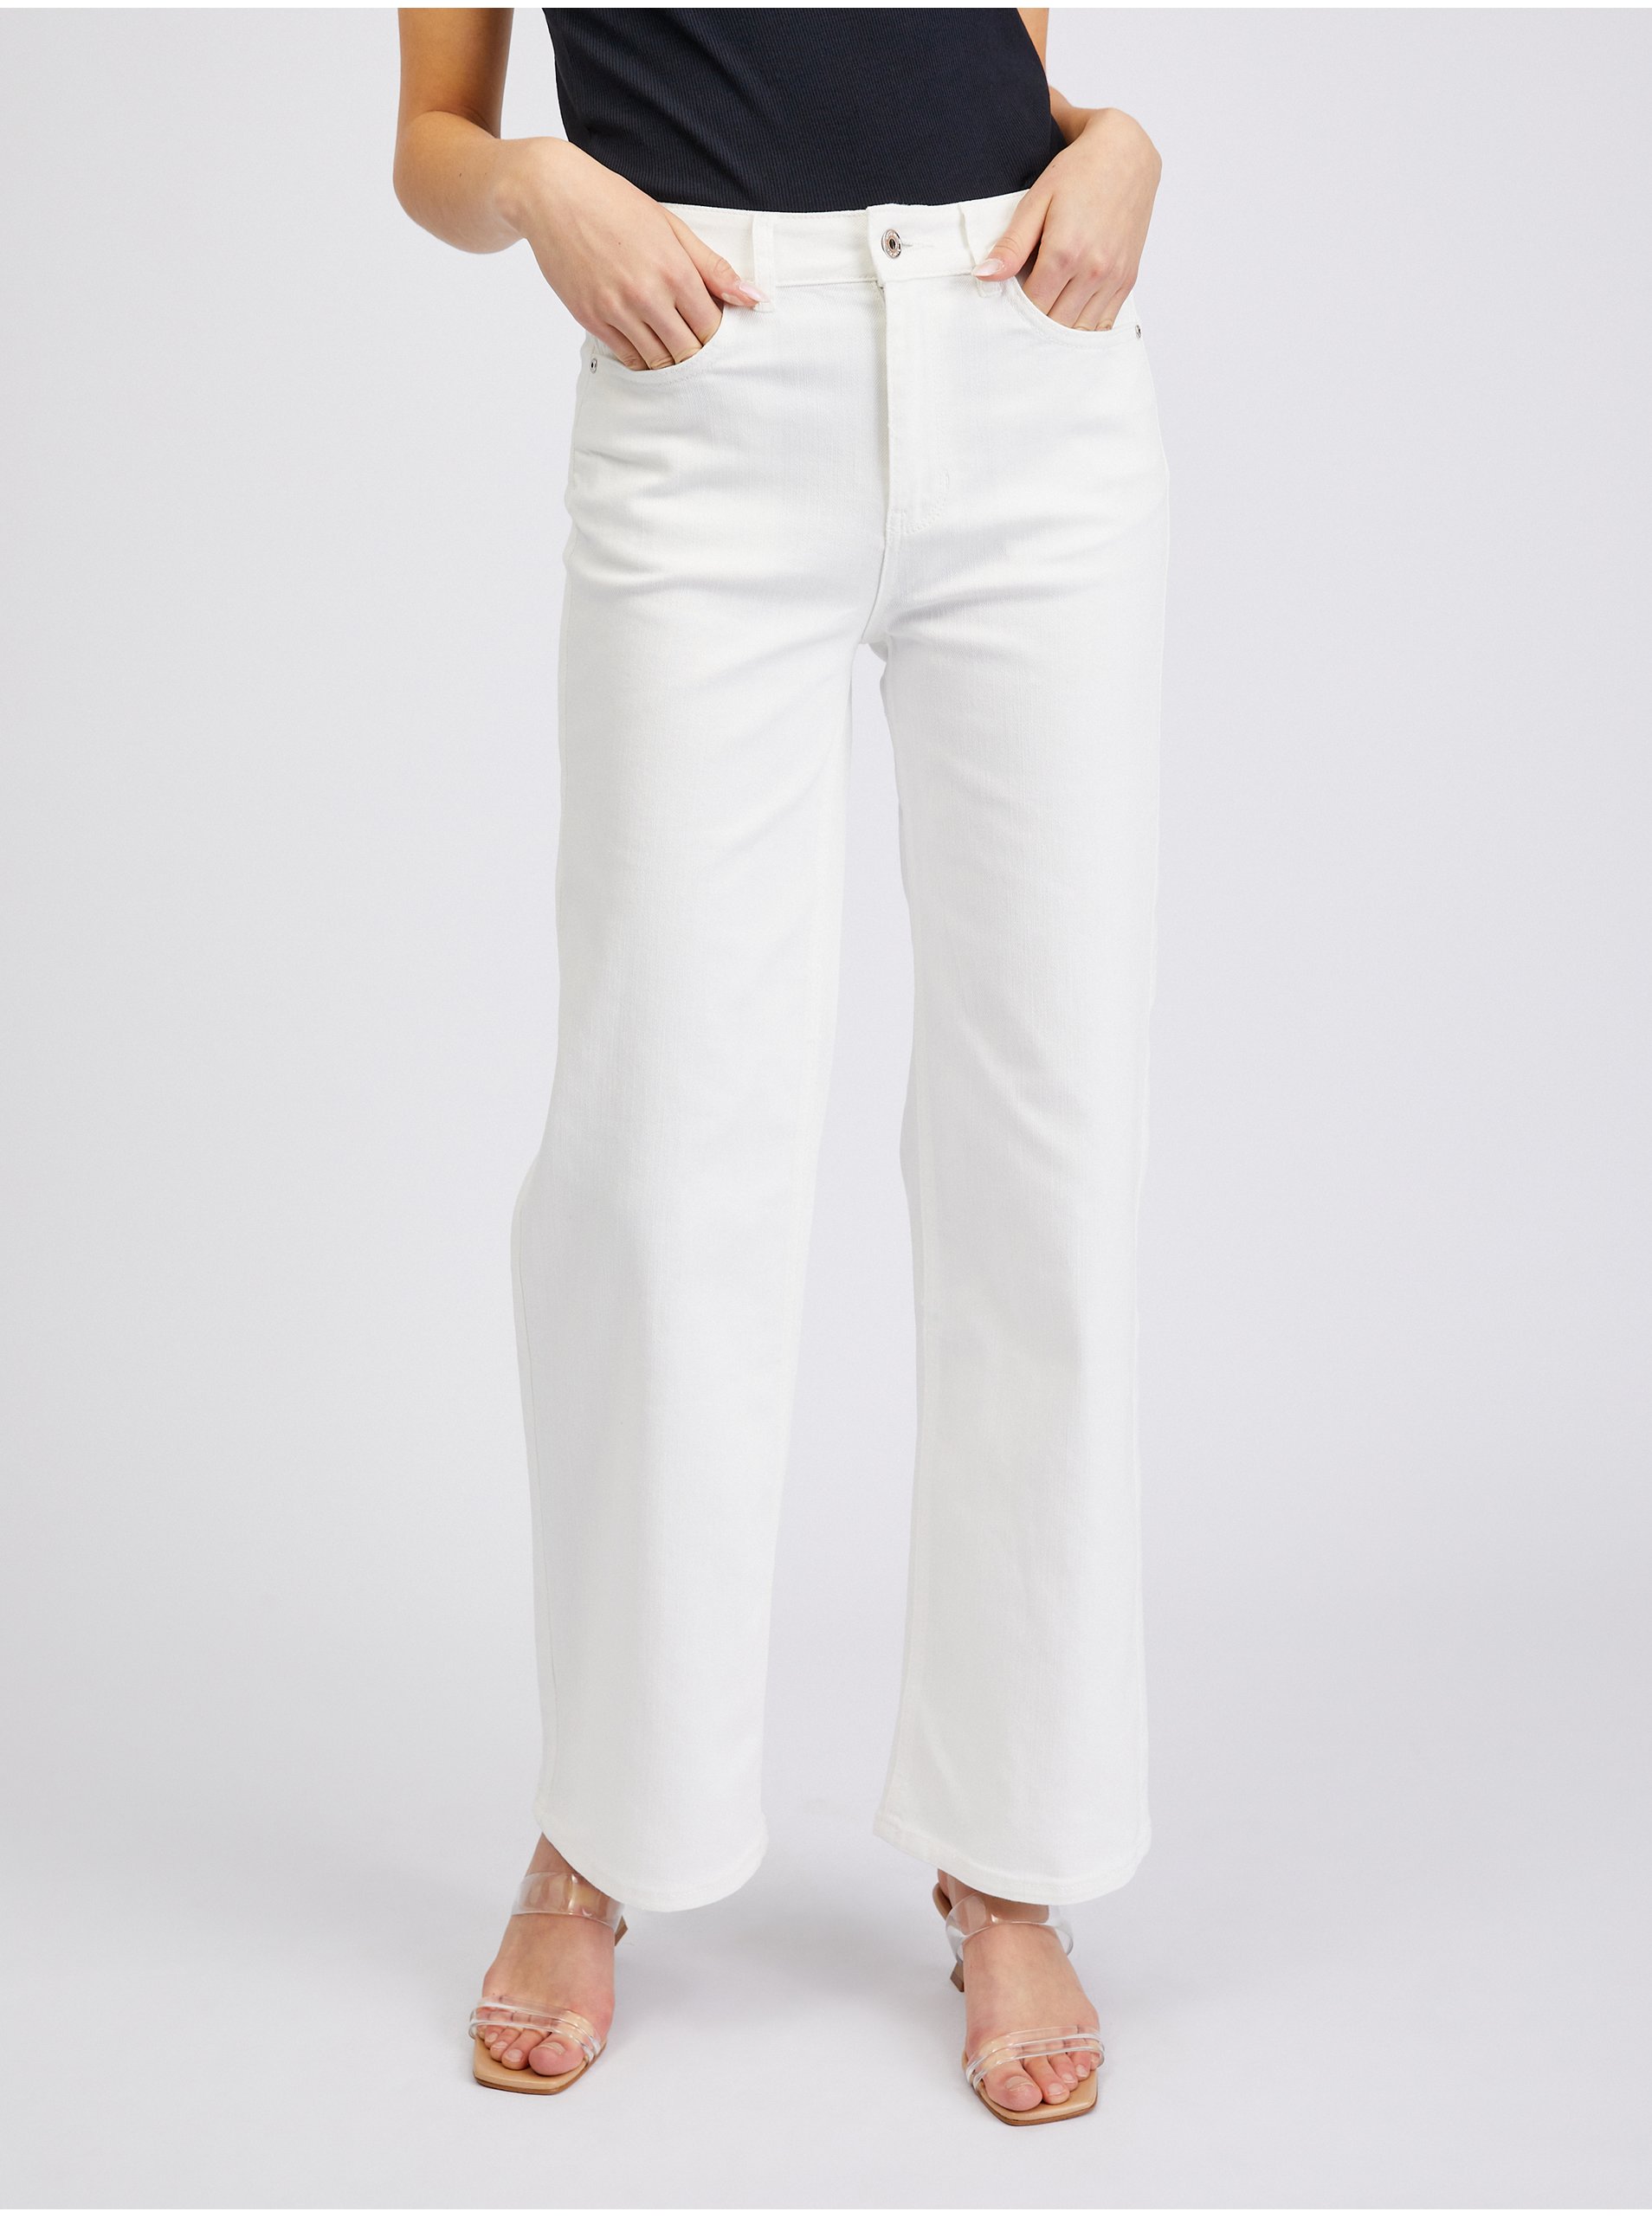 Orsay White Women Bootcut Jeans - Women